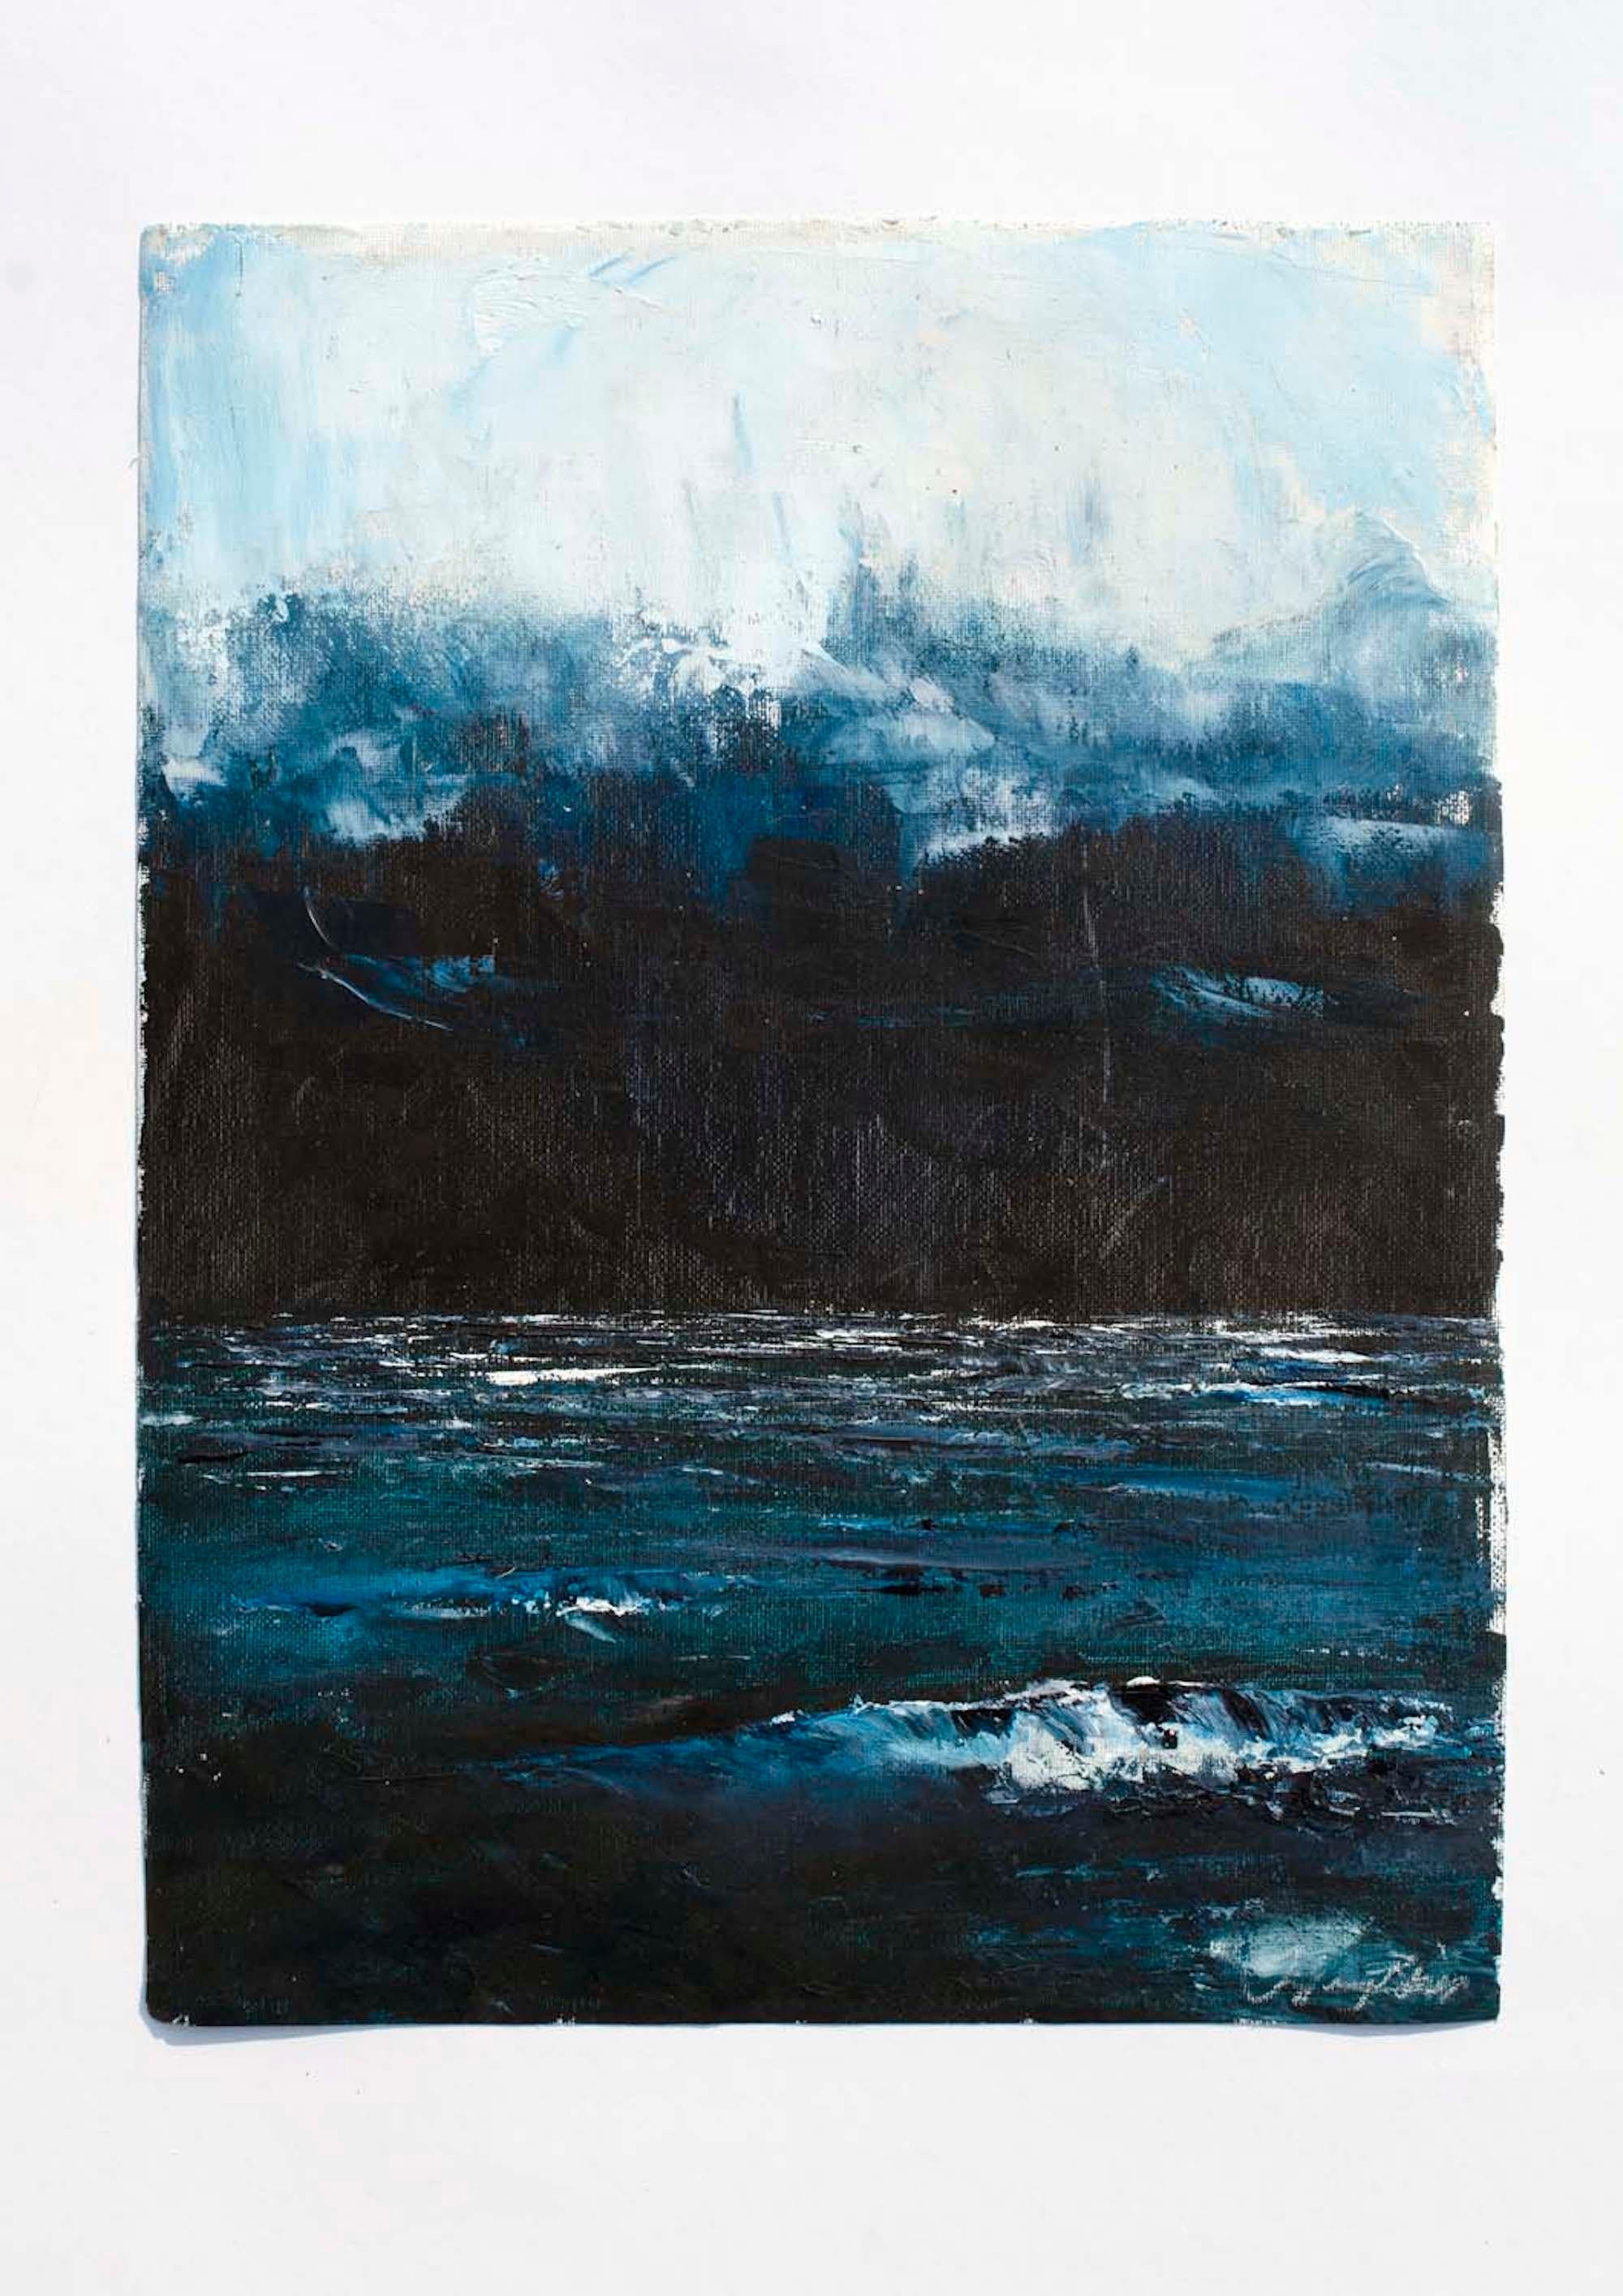 <p>Commentaires de l'artiste<br>L'artiste Tiffany Blaise capture une mer calme sous un ciel nocturne couvert. Une brume nuageuse recouvre l'atmosphère de façon spectaculaire au plus fort du crépuscule. Les eaux placides brillent lumineusement dans